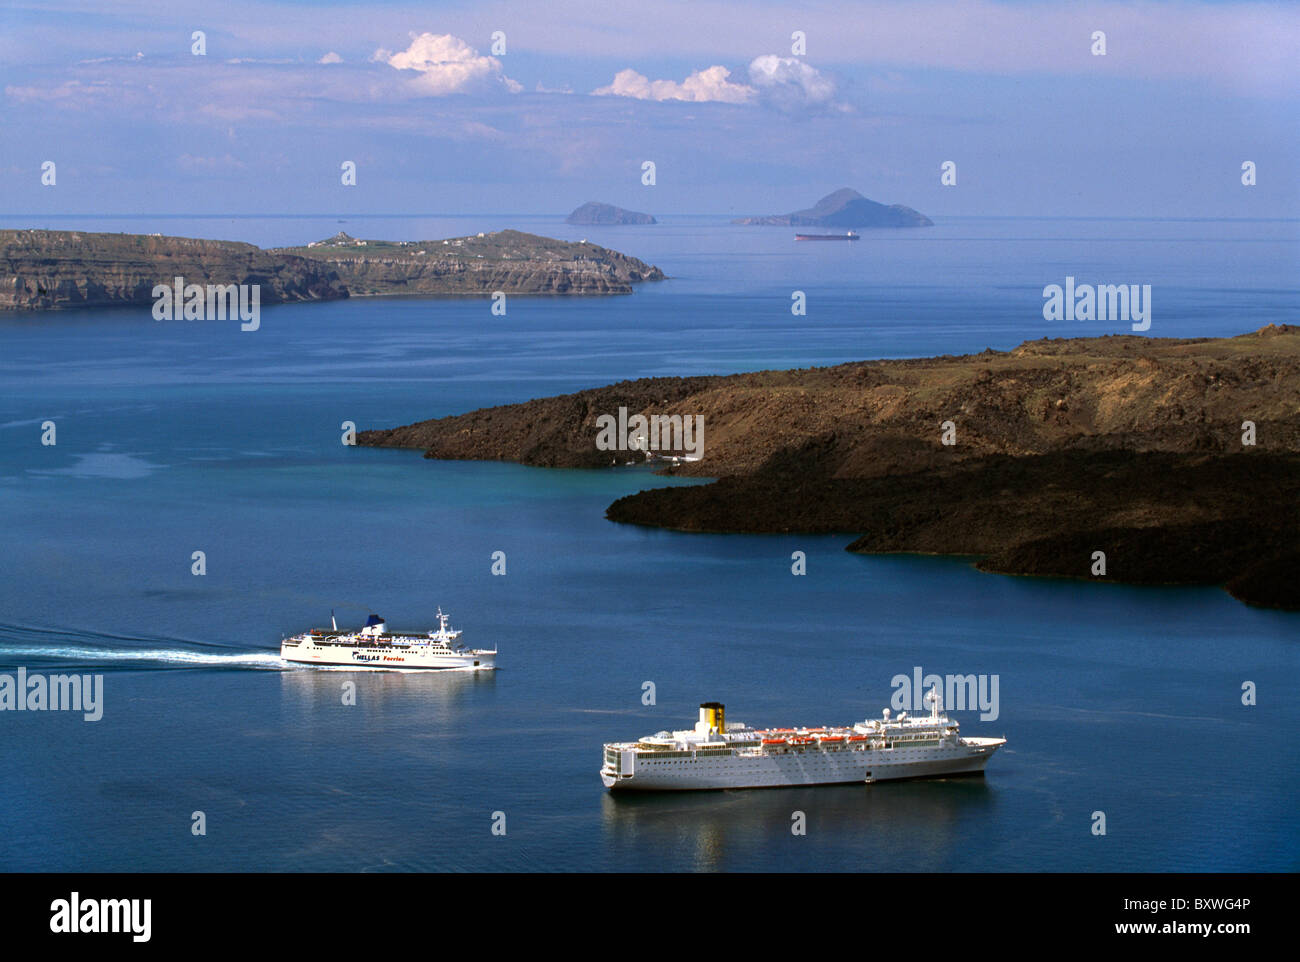 Cruise Ships near Volcano Nea Kameni, Santorin (Santorini), Greece Stock Photo